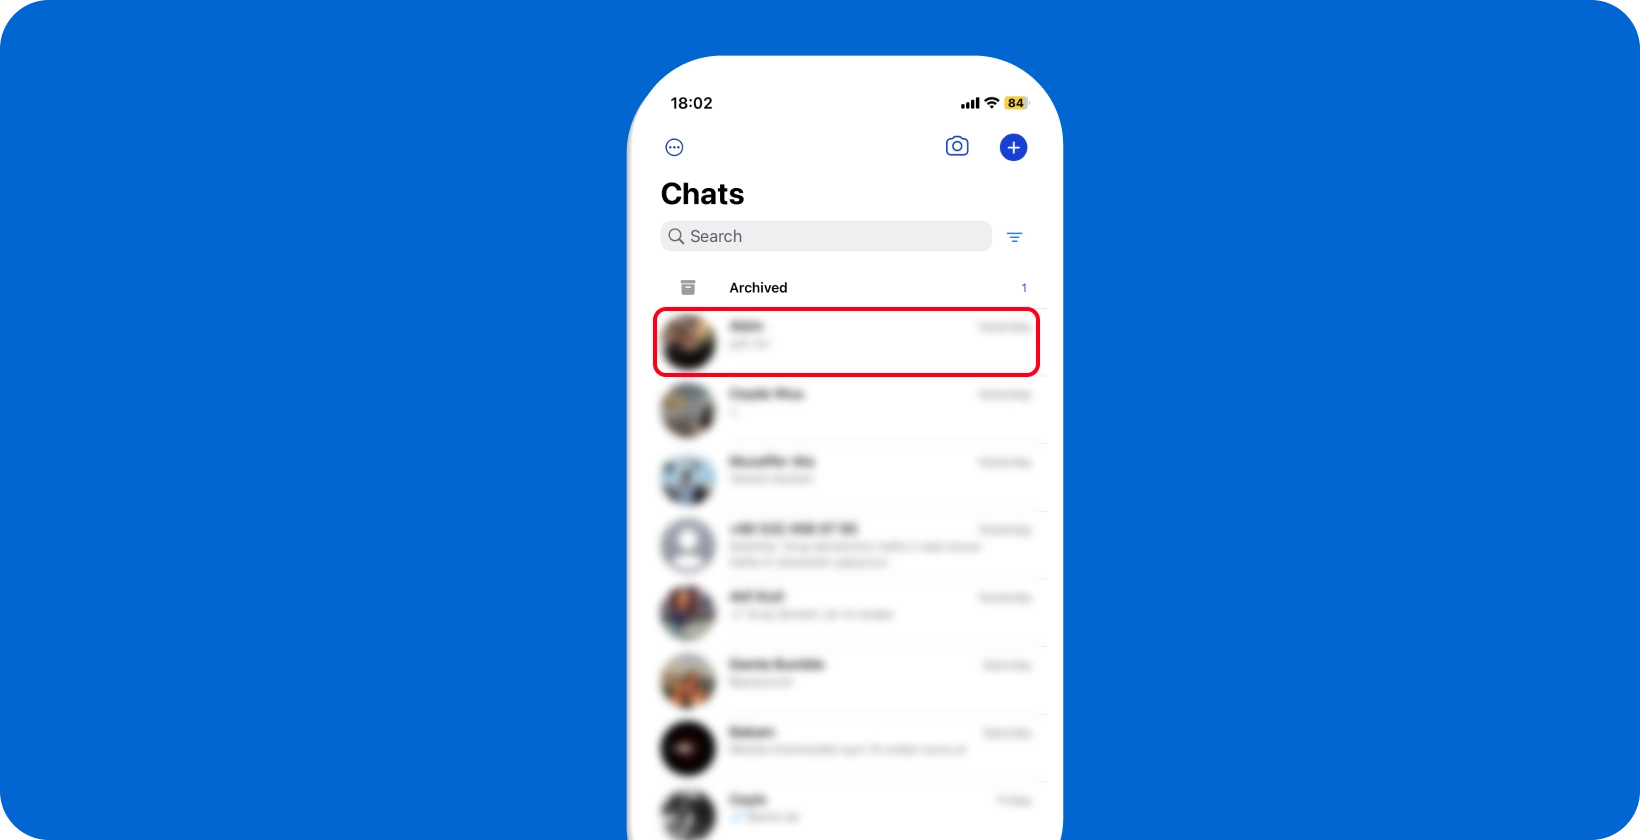 Pantalla de chat de WhatsApp que muestra una descripción general de las conversaciones, lista para la interacción y el dictado del usuario.